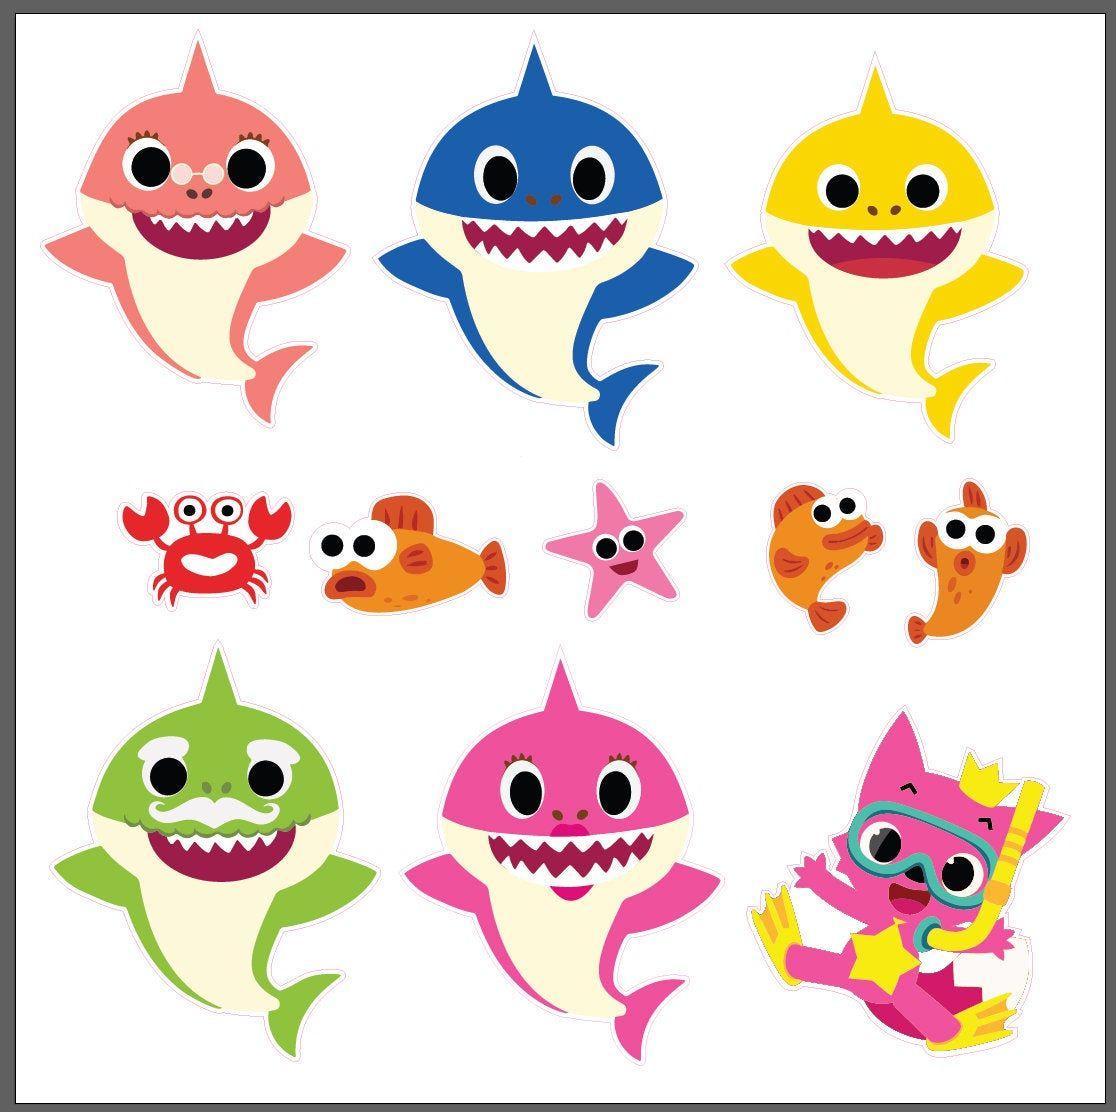 [最も選択された] baby shark characters yellow 305462 Bestpixtajp3vgh